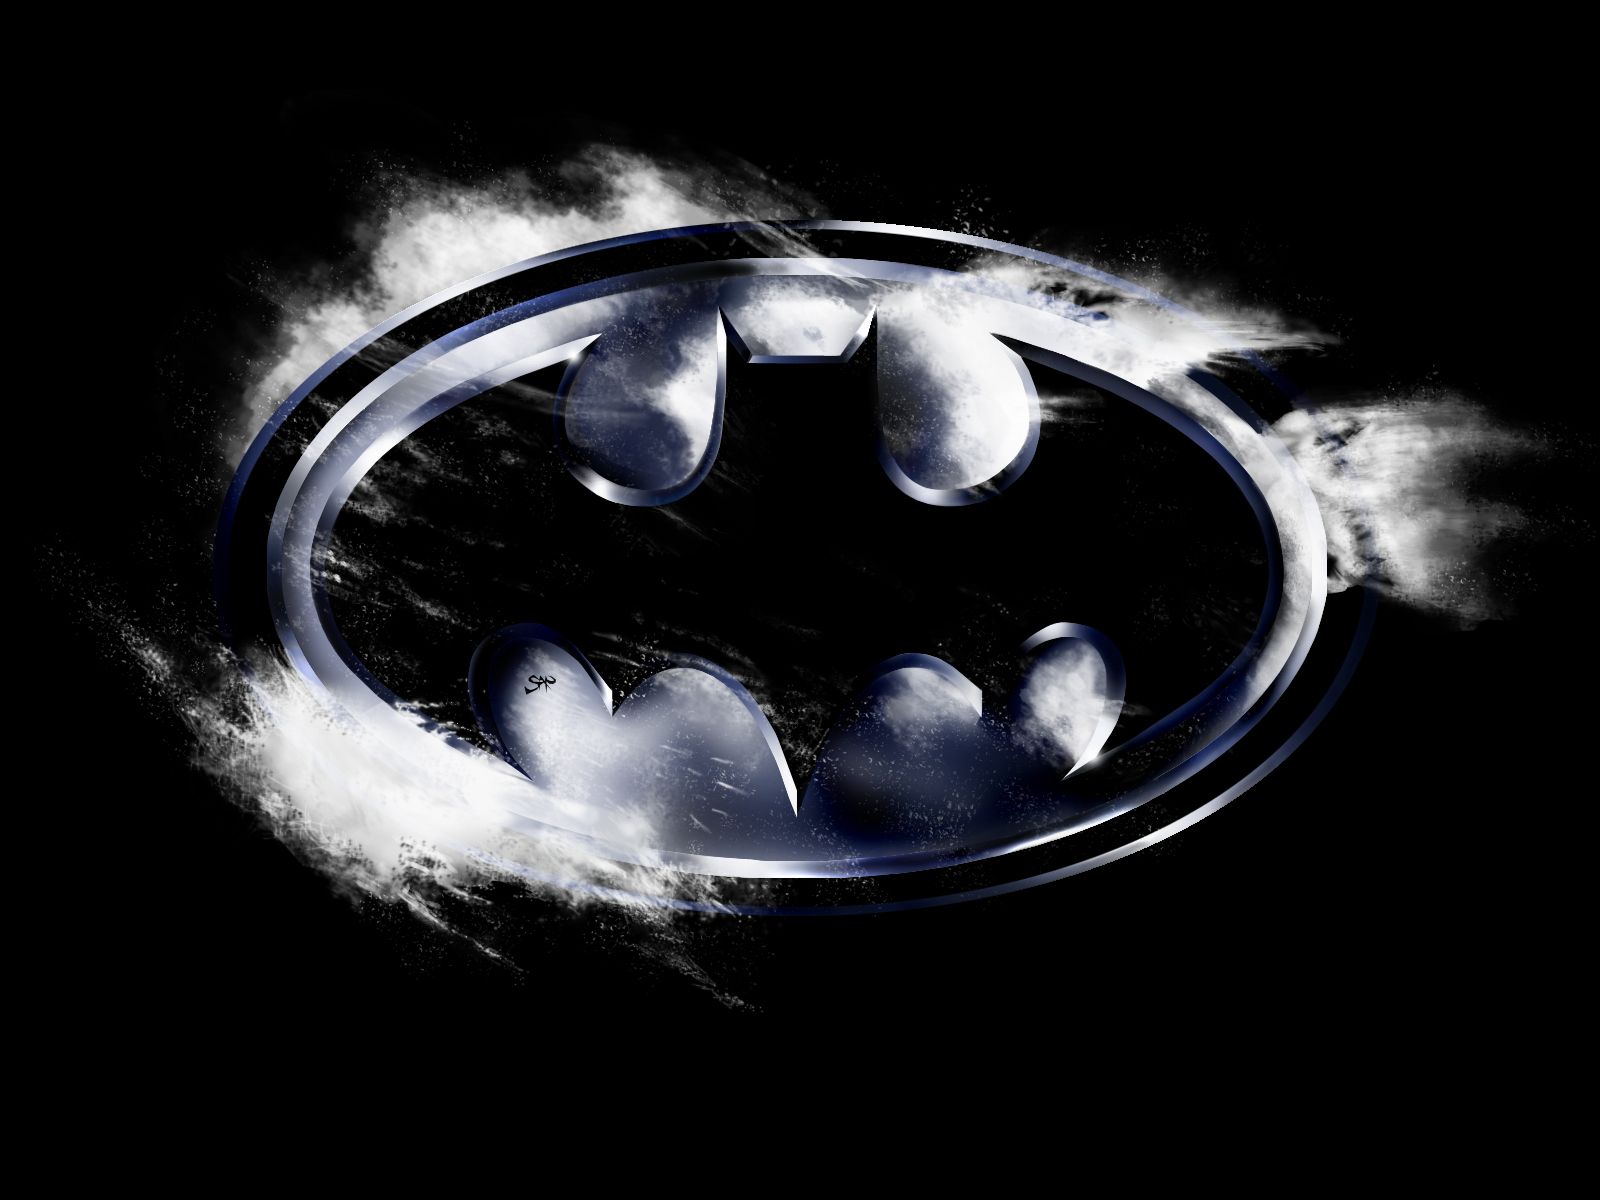 32 Batman Returns HD Wallpapers | Backgrounds - Wallpaper Abyss